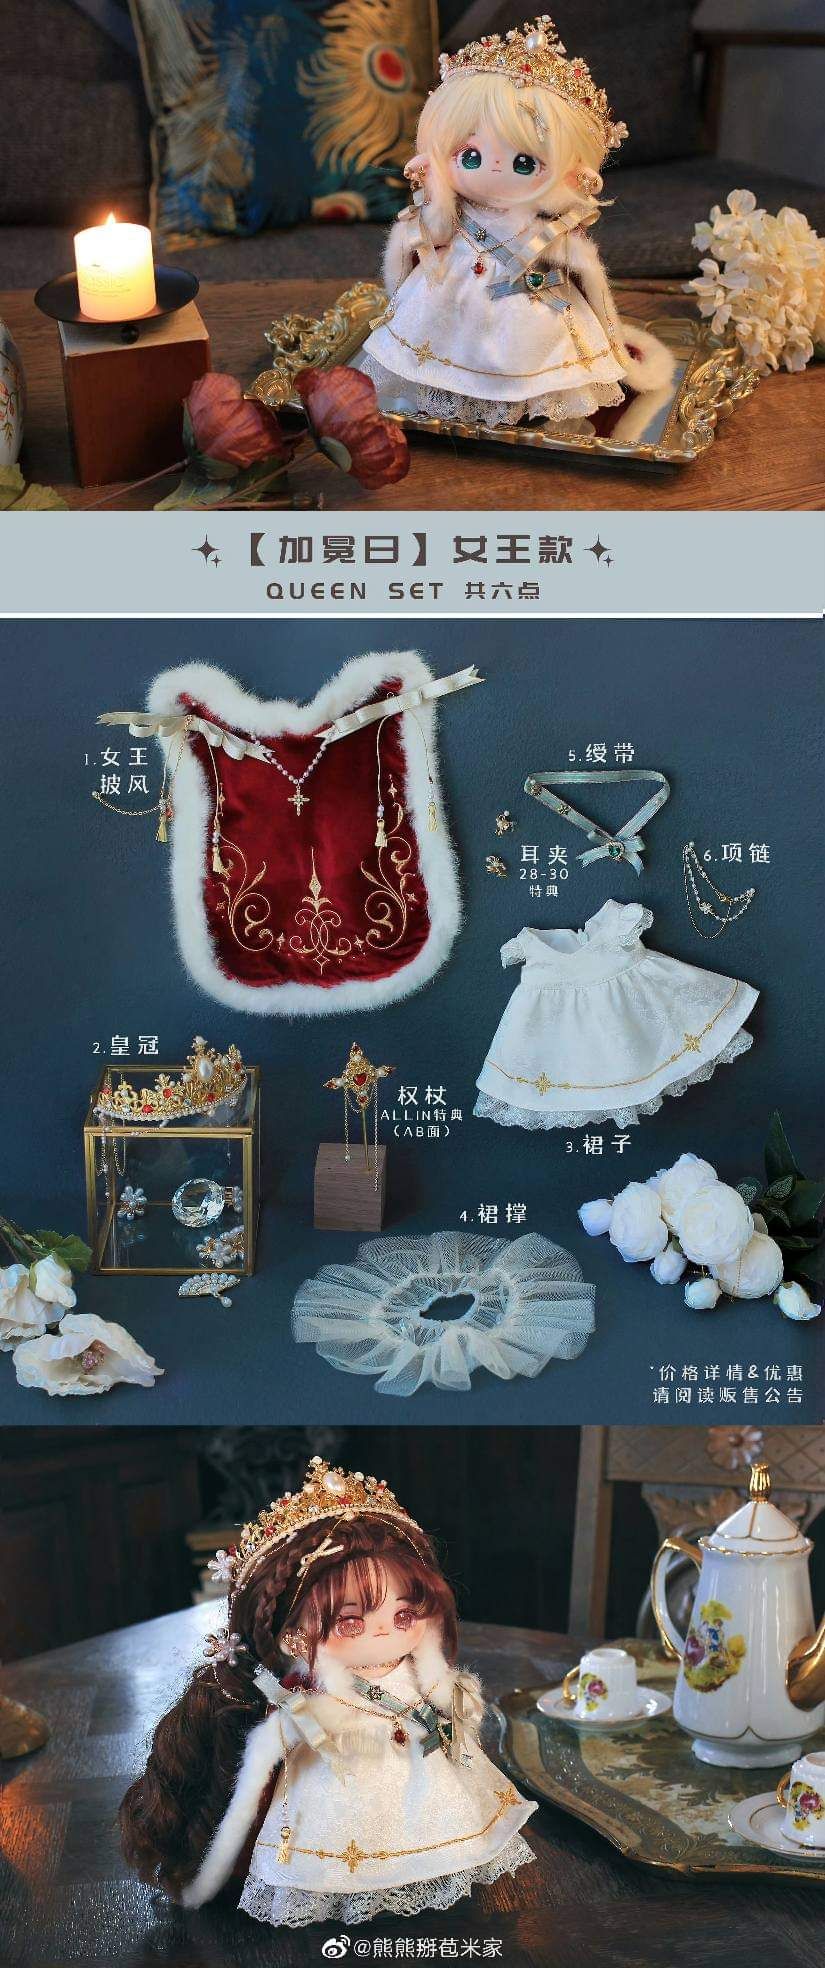 加冕日國王+女王款